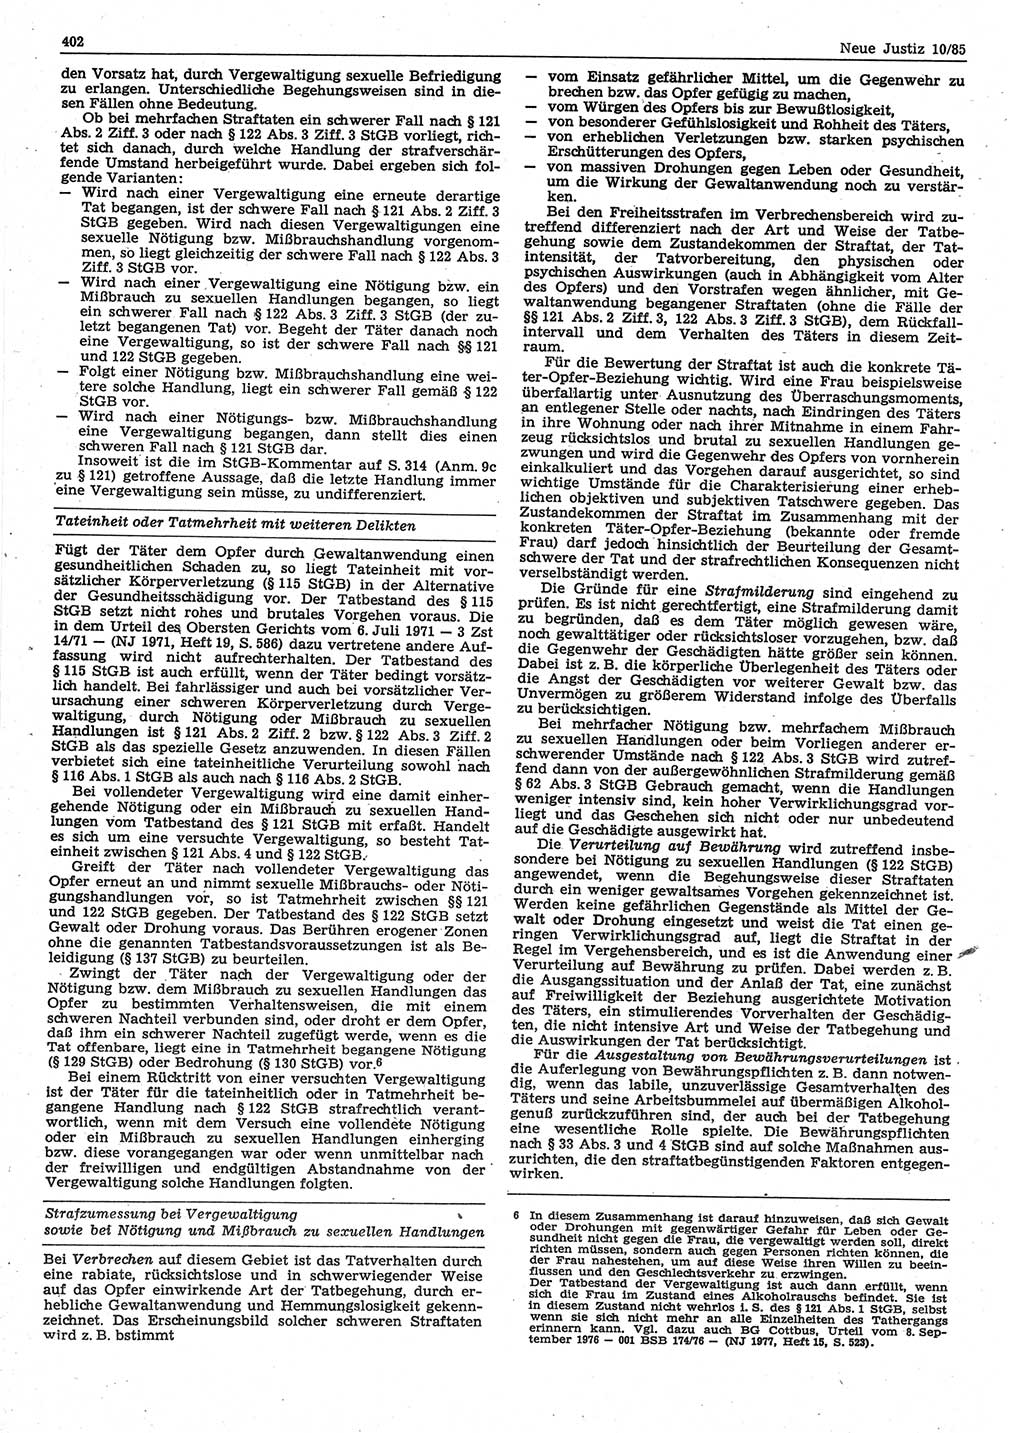 Neue Justiz (NJ), Zeitschrift für sozialistisches Recht und Gesetzlichkeit [Deutsche Demokratische Republik (DDR)], 39. Jahrgang 1985, Seite 402 (NJ DDR 1985, S. 402)